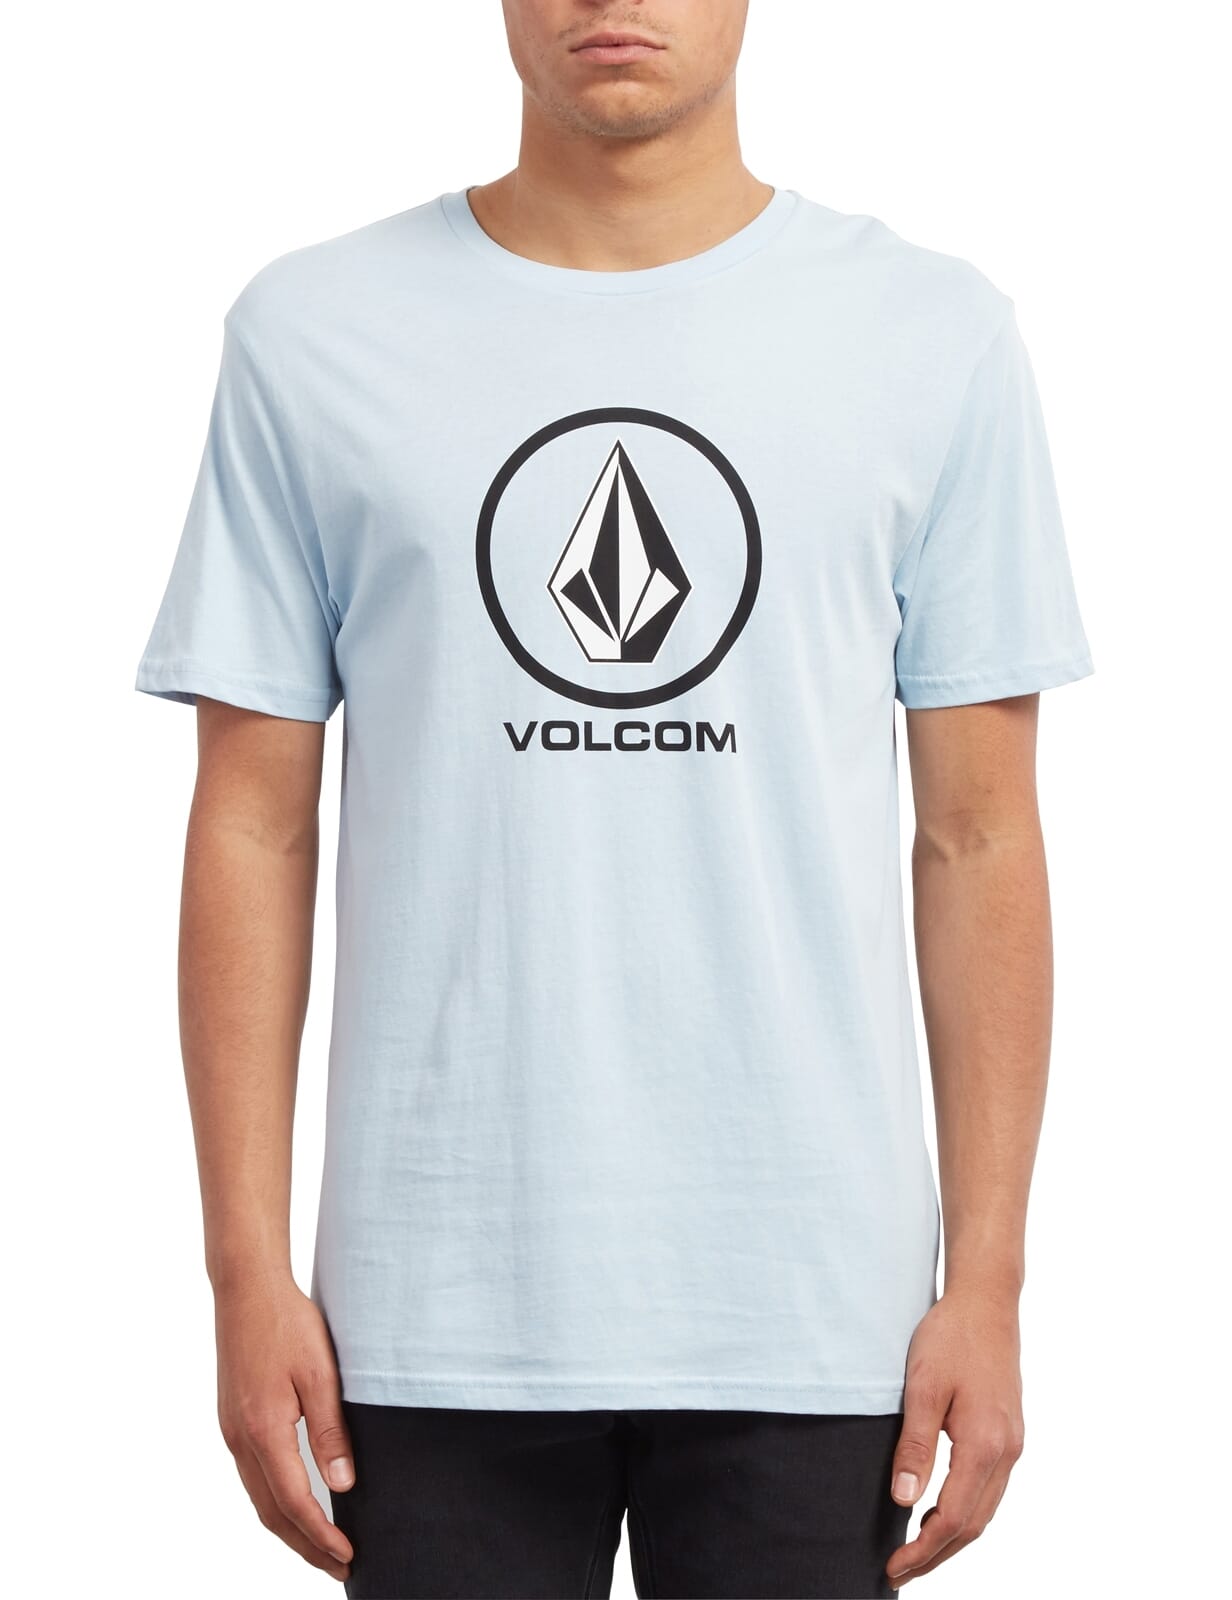 Volcom Nuke Kooks Short Sleeve T-Shirt in Black 